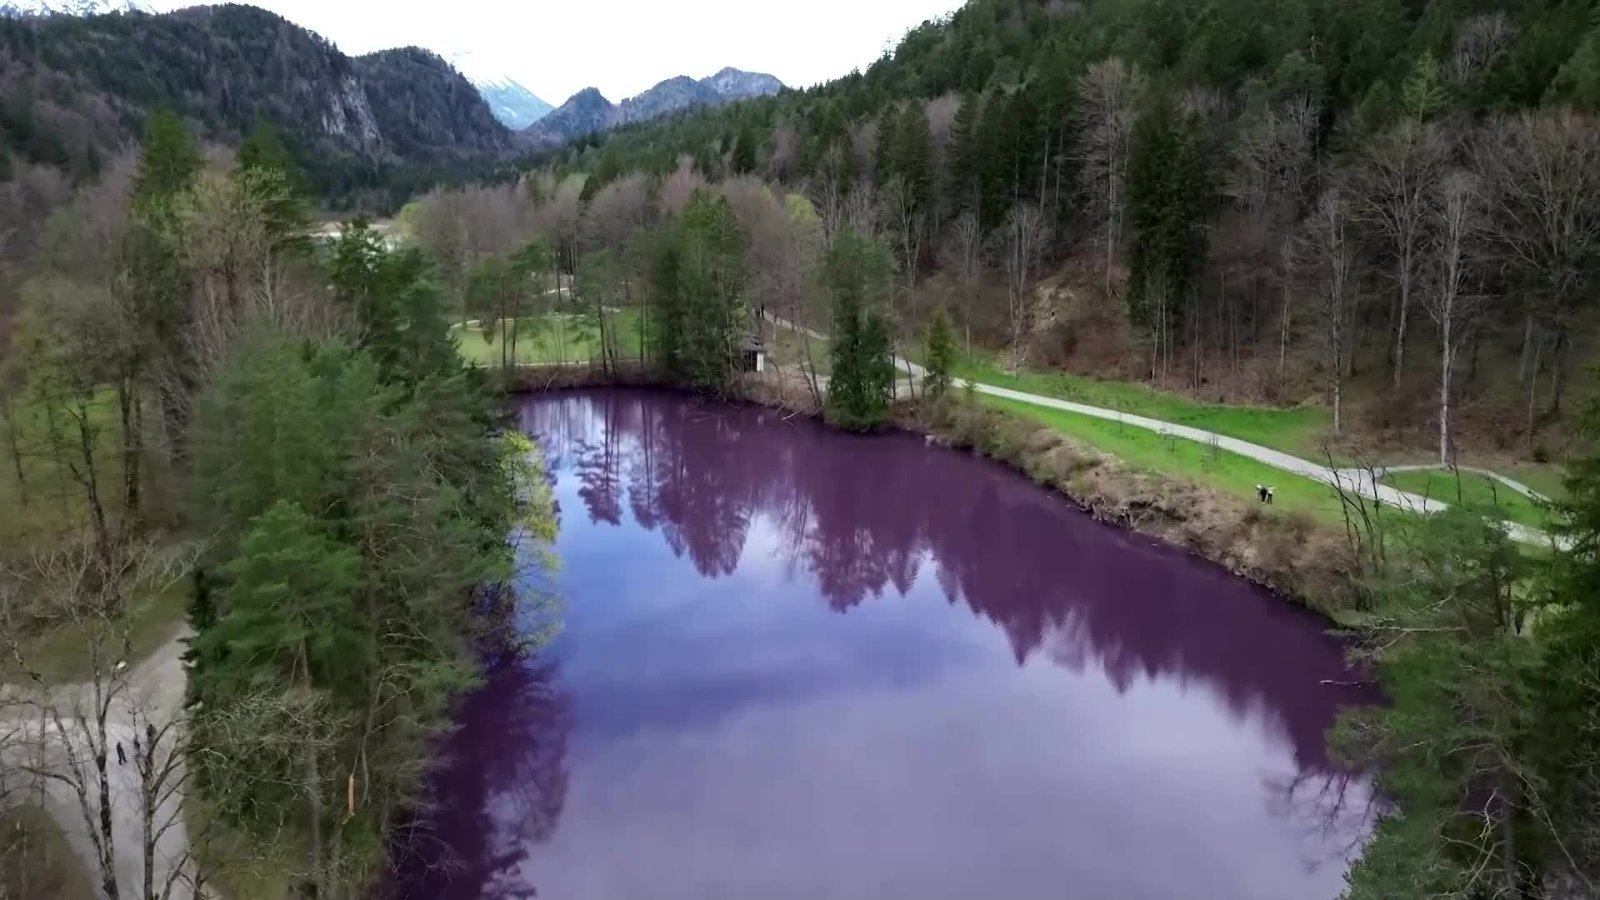 Vokietijoje lankytojai plūsta pamatyti violetine spalva bakterijų nudažyto ežero